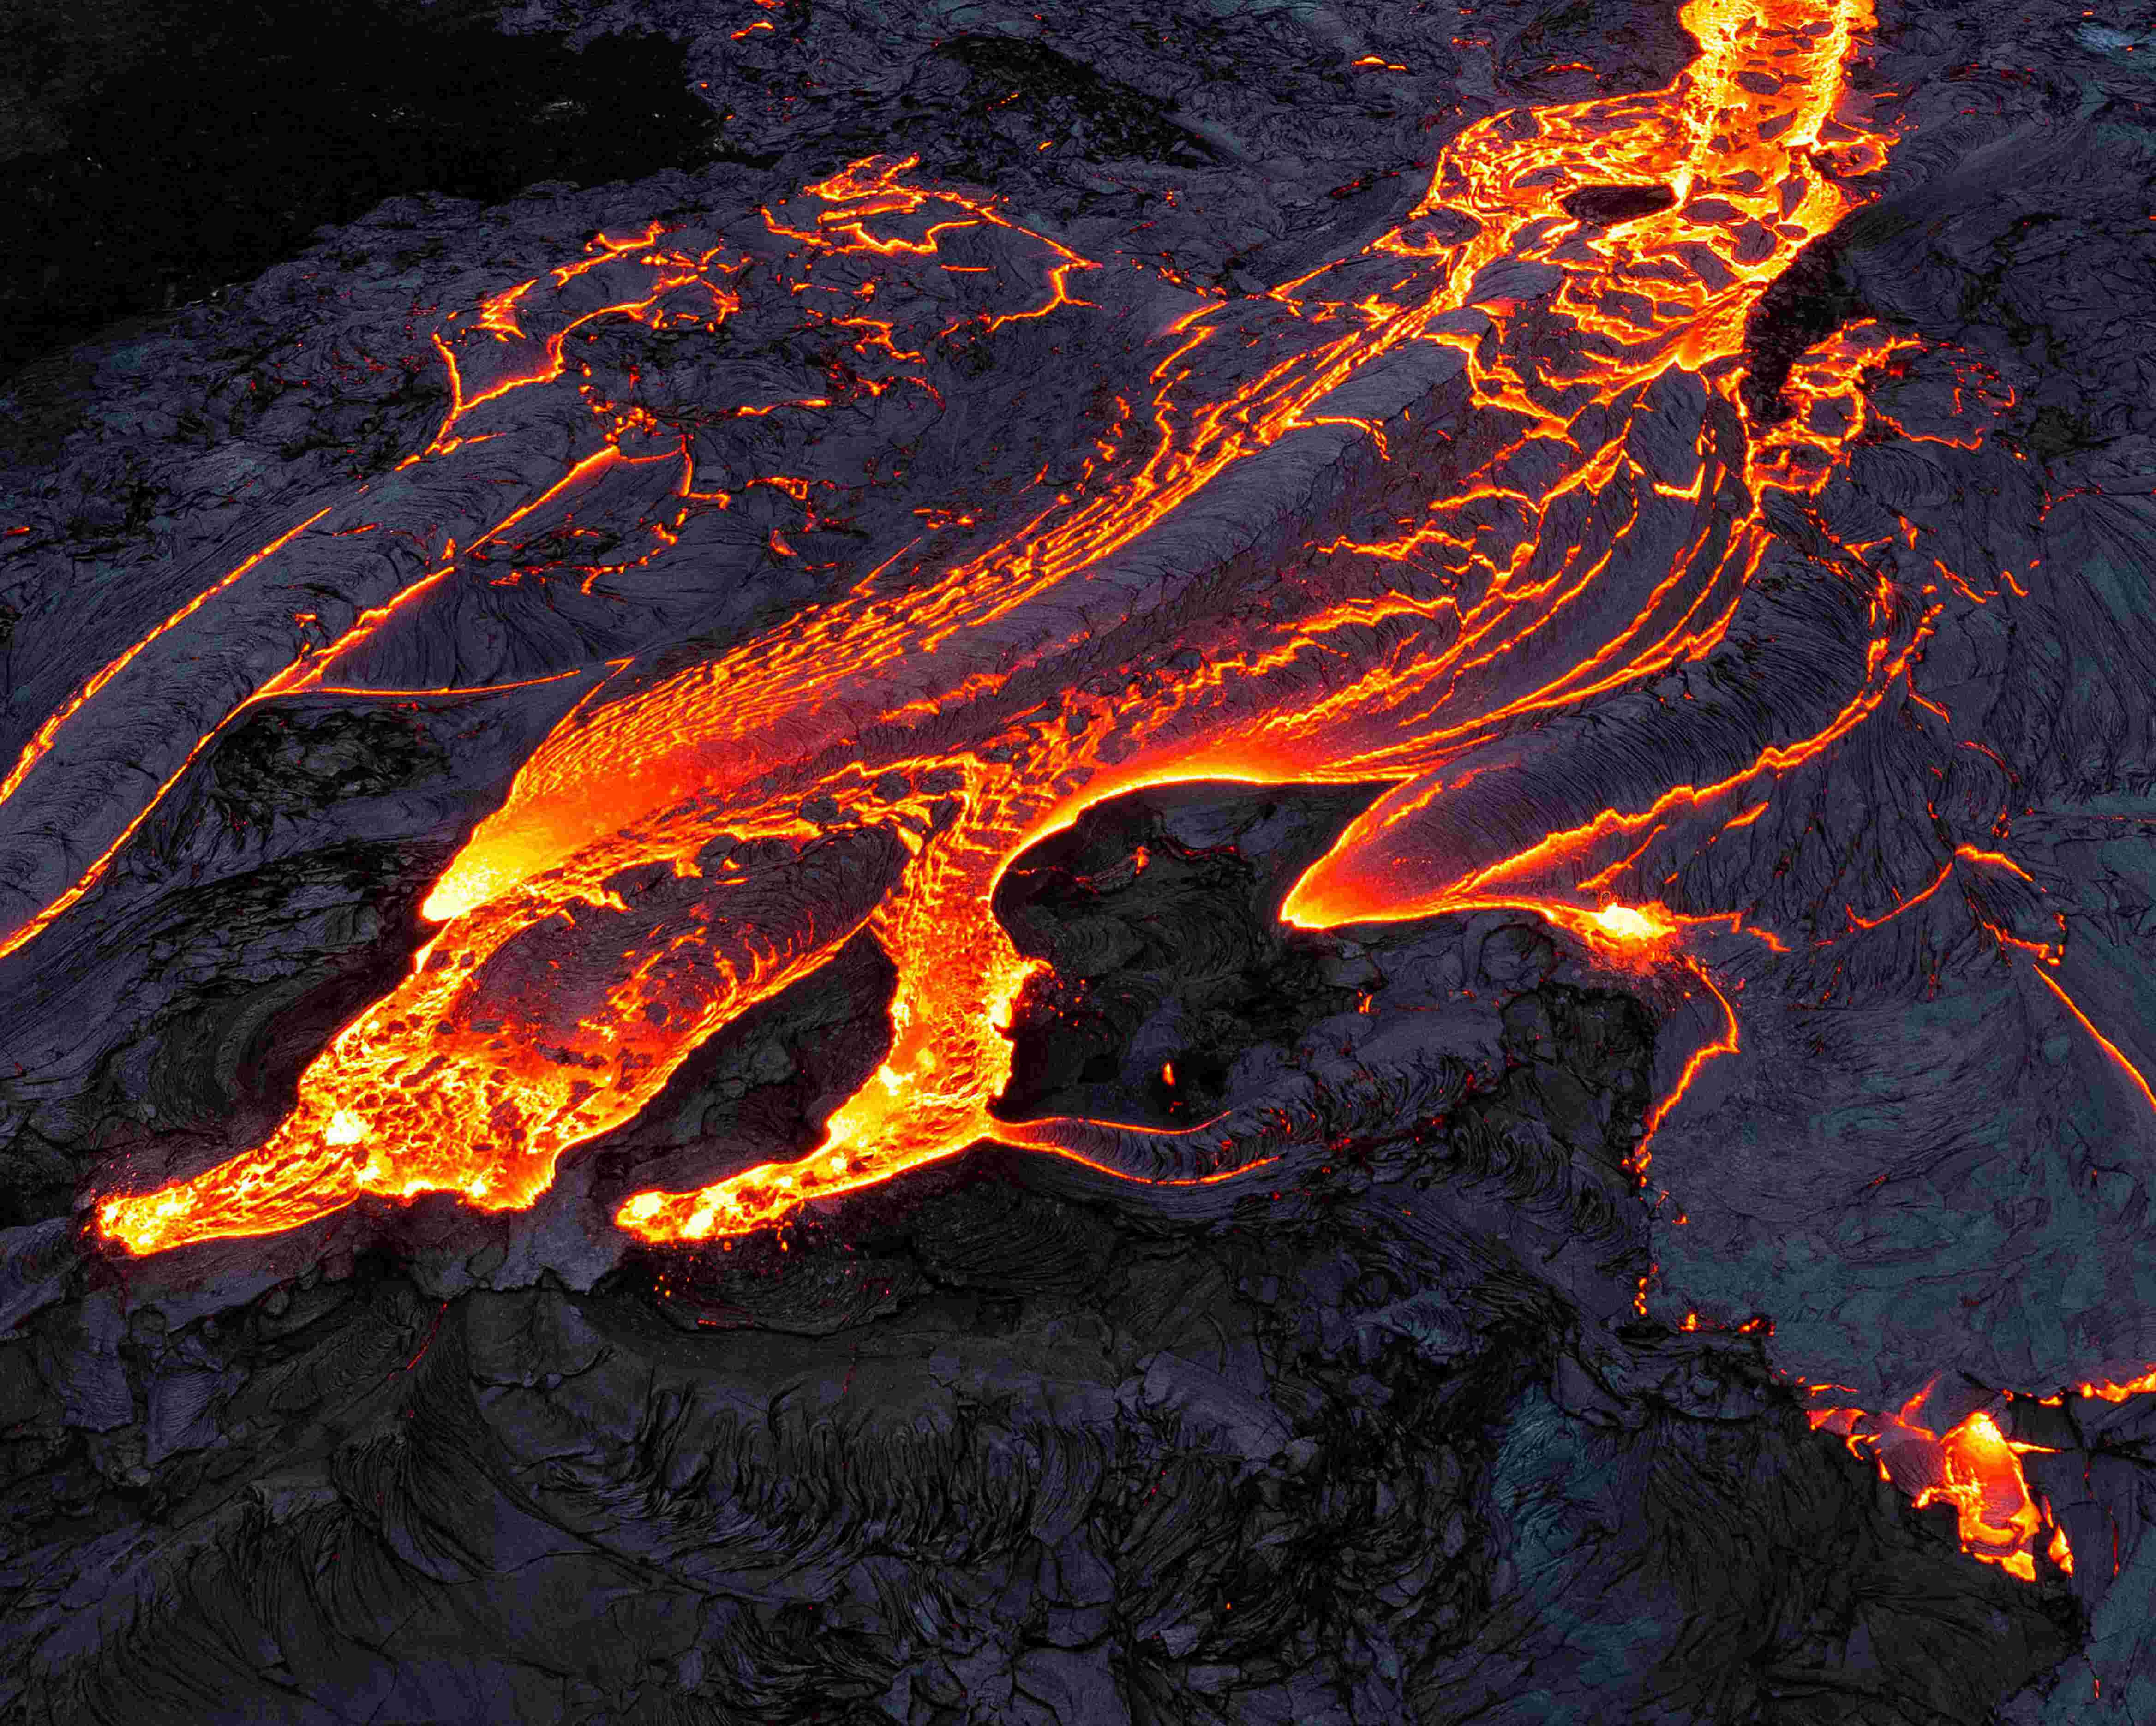 摄影师用无人机近距离拍摄火山熔岩流淌 呈现大自然震撼力量